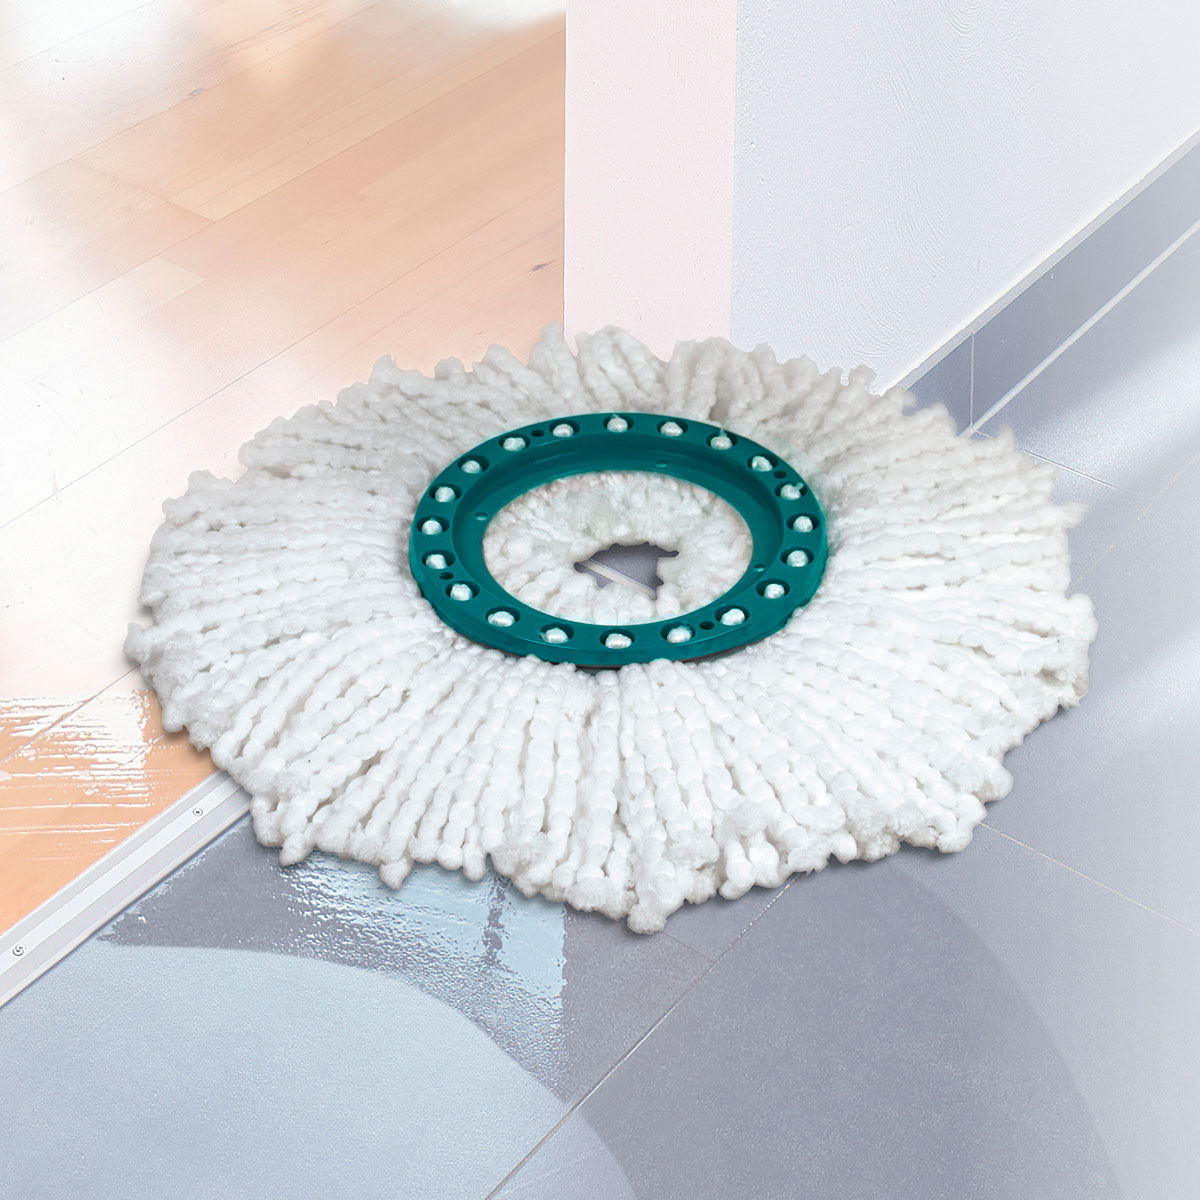 Насадка для швабры Leifheit Clean Twist Mop, 52096 набор для уборки leifheit combi clean